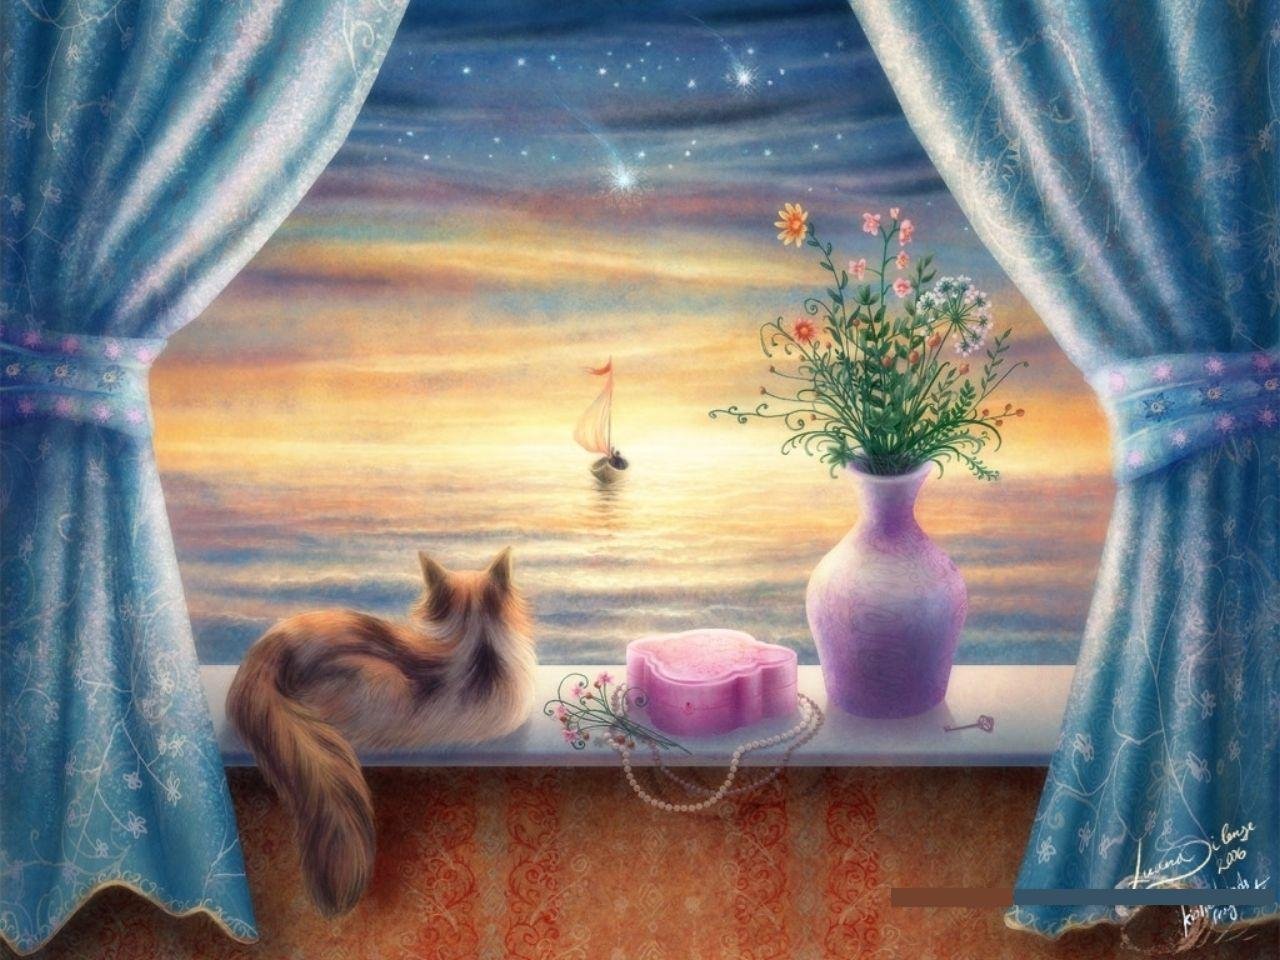 Гармонии уюта и тепла. Уютные иллюстрации. Кошки на окошке. Окошко сказочное. Сказка на окне.